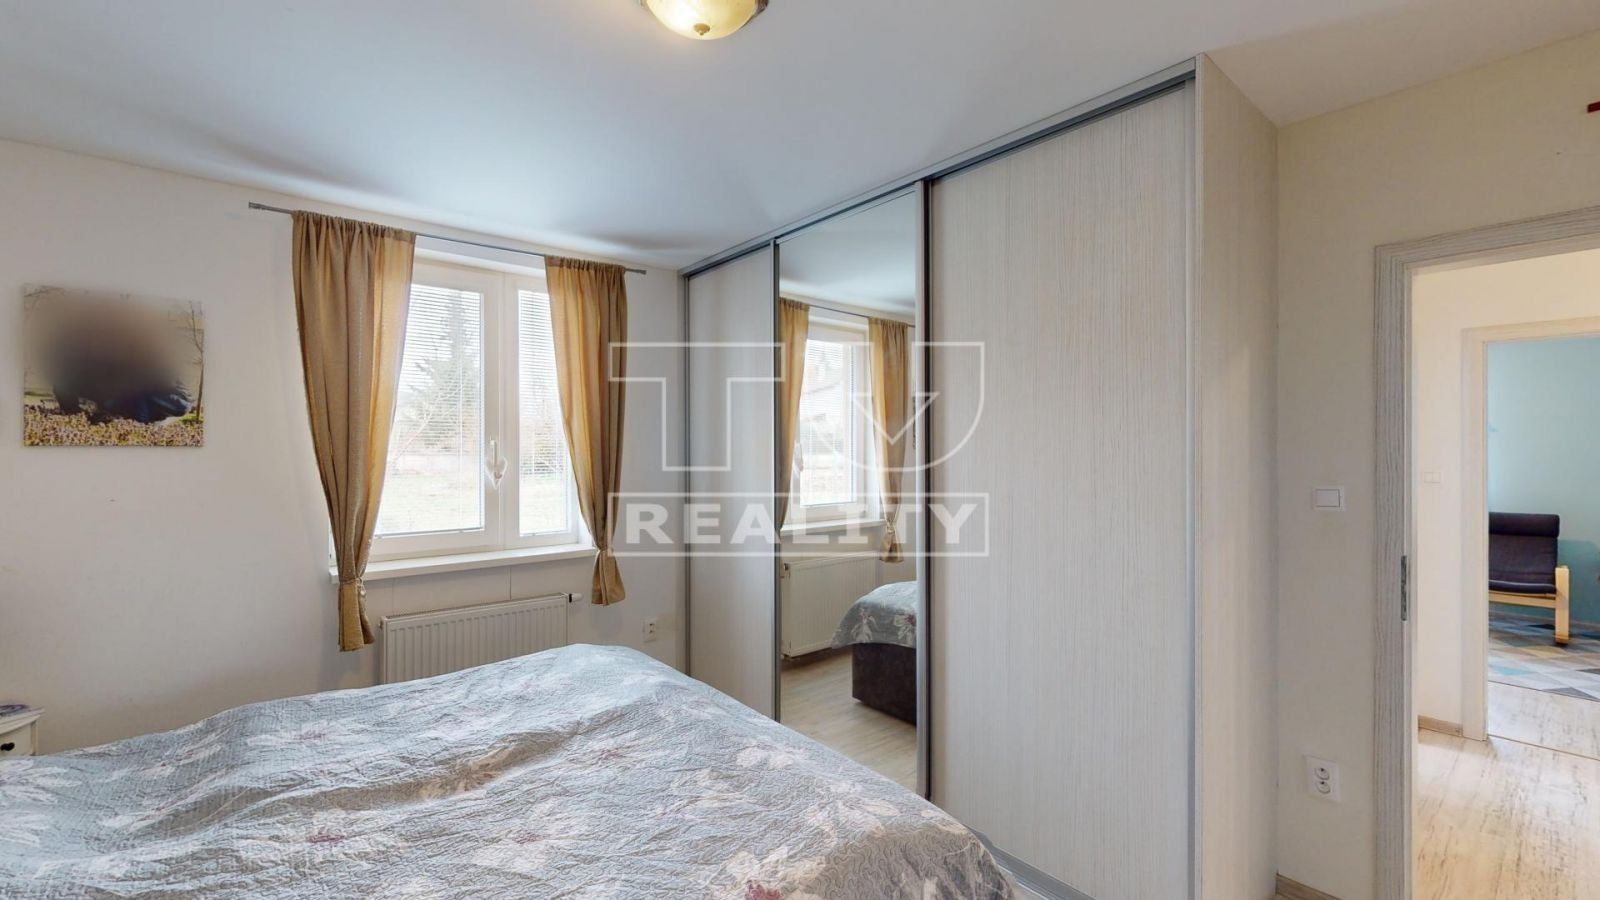 Výrazne znížená cena!!!
Na predaj pekný 4 izbový rodinný dom 126 m2 tichá lokalita v obci Veselé pri Piešťanoch